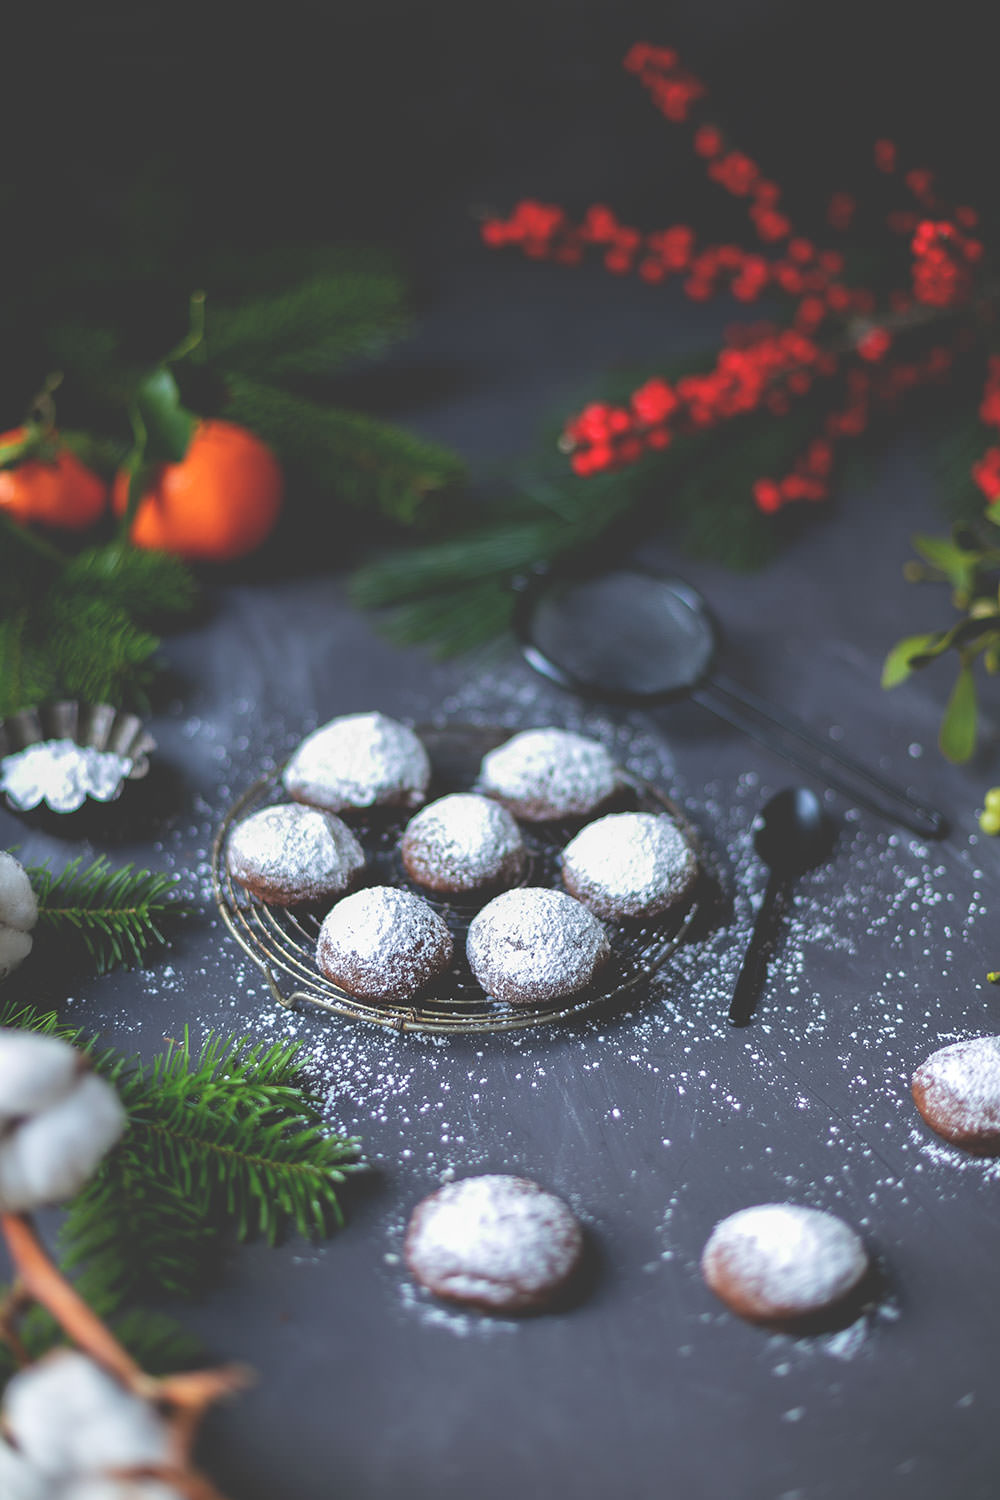 Rezept für schnelle, knusprige Espresso-Walnuss-Kekse | super einfach und schnell - so wird Weihnachten entspannt! | moeyskitchen.com #weihnachtsplätzchen #weihnachtskekse #cookies #plätzchen #rezepte #foodblog #weihnachten